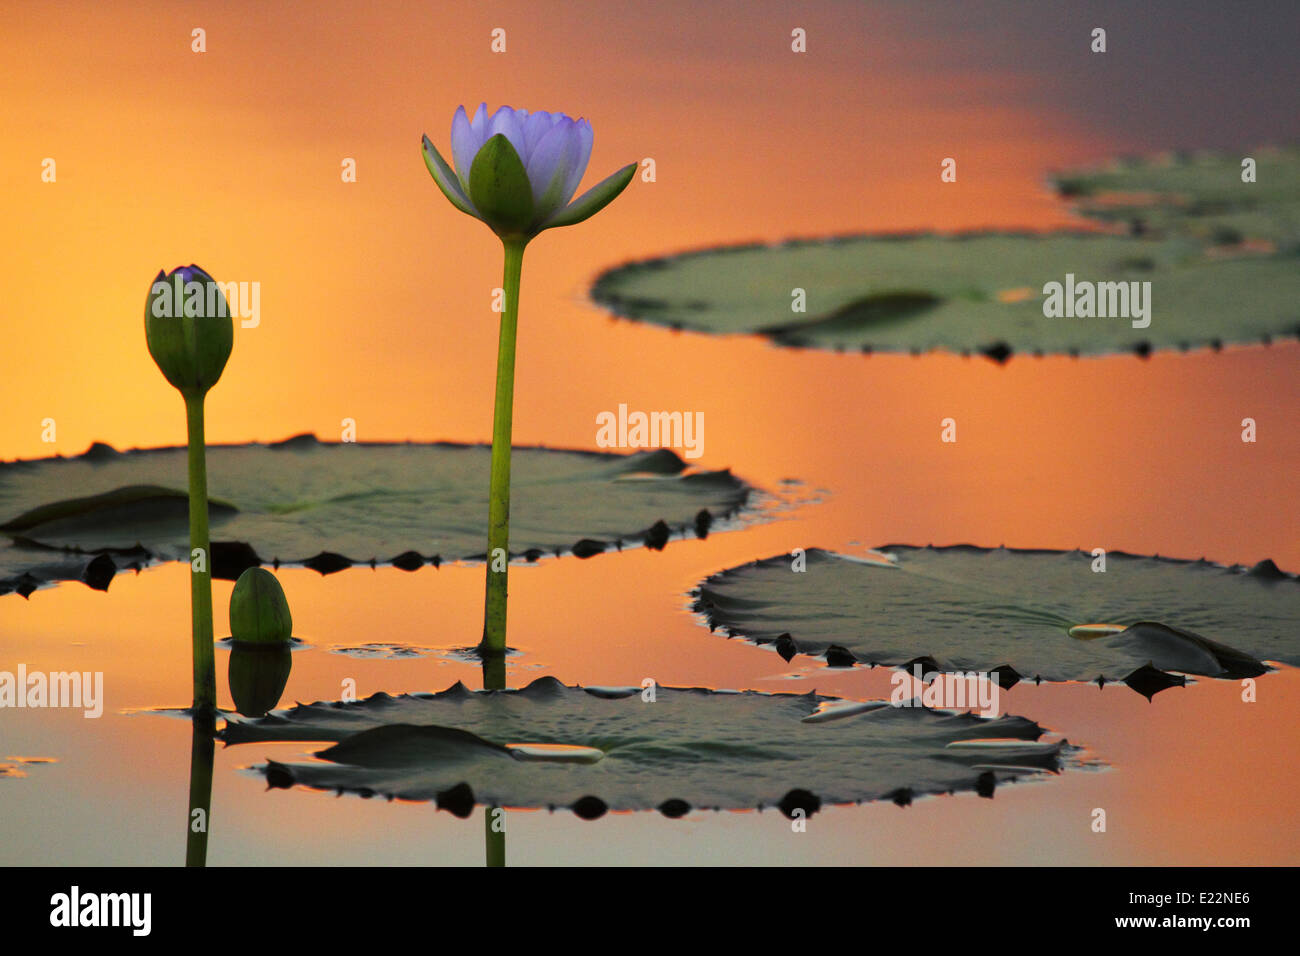 Baigné dans la lumière orange du soir, une paire de fleurs de lis d'eau reflètent sur l'eau tranquille. Banque D'Images